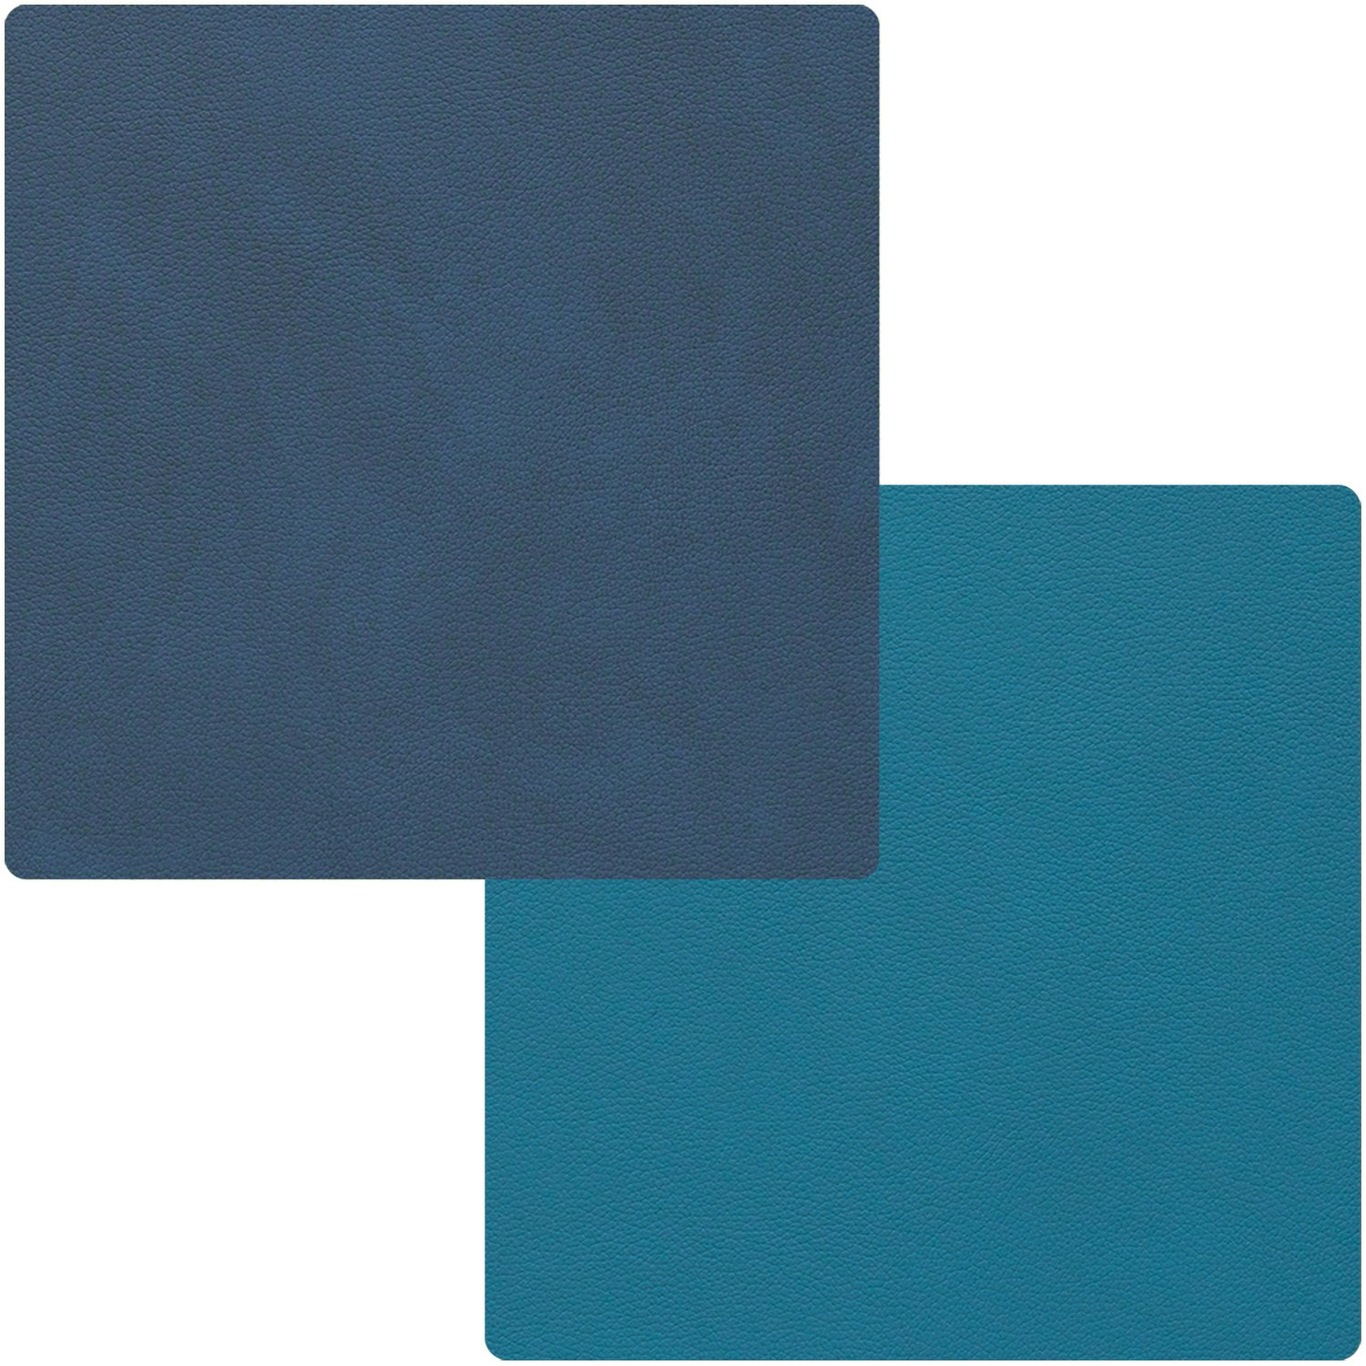 Square Käännettävä Lasinalunen 10x10 cm, Midnight Blue/Petrol